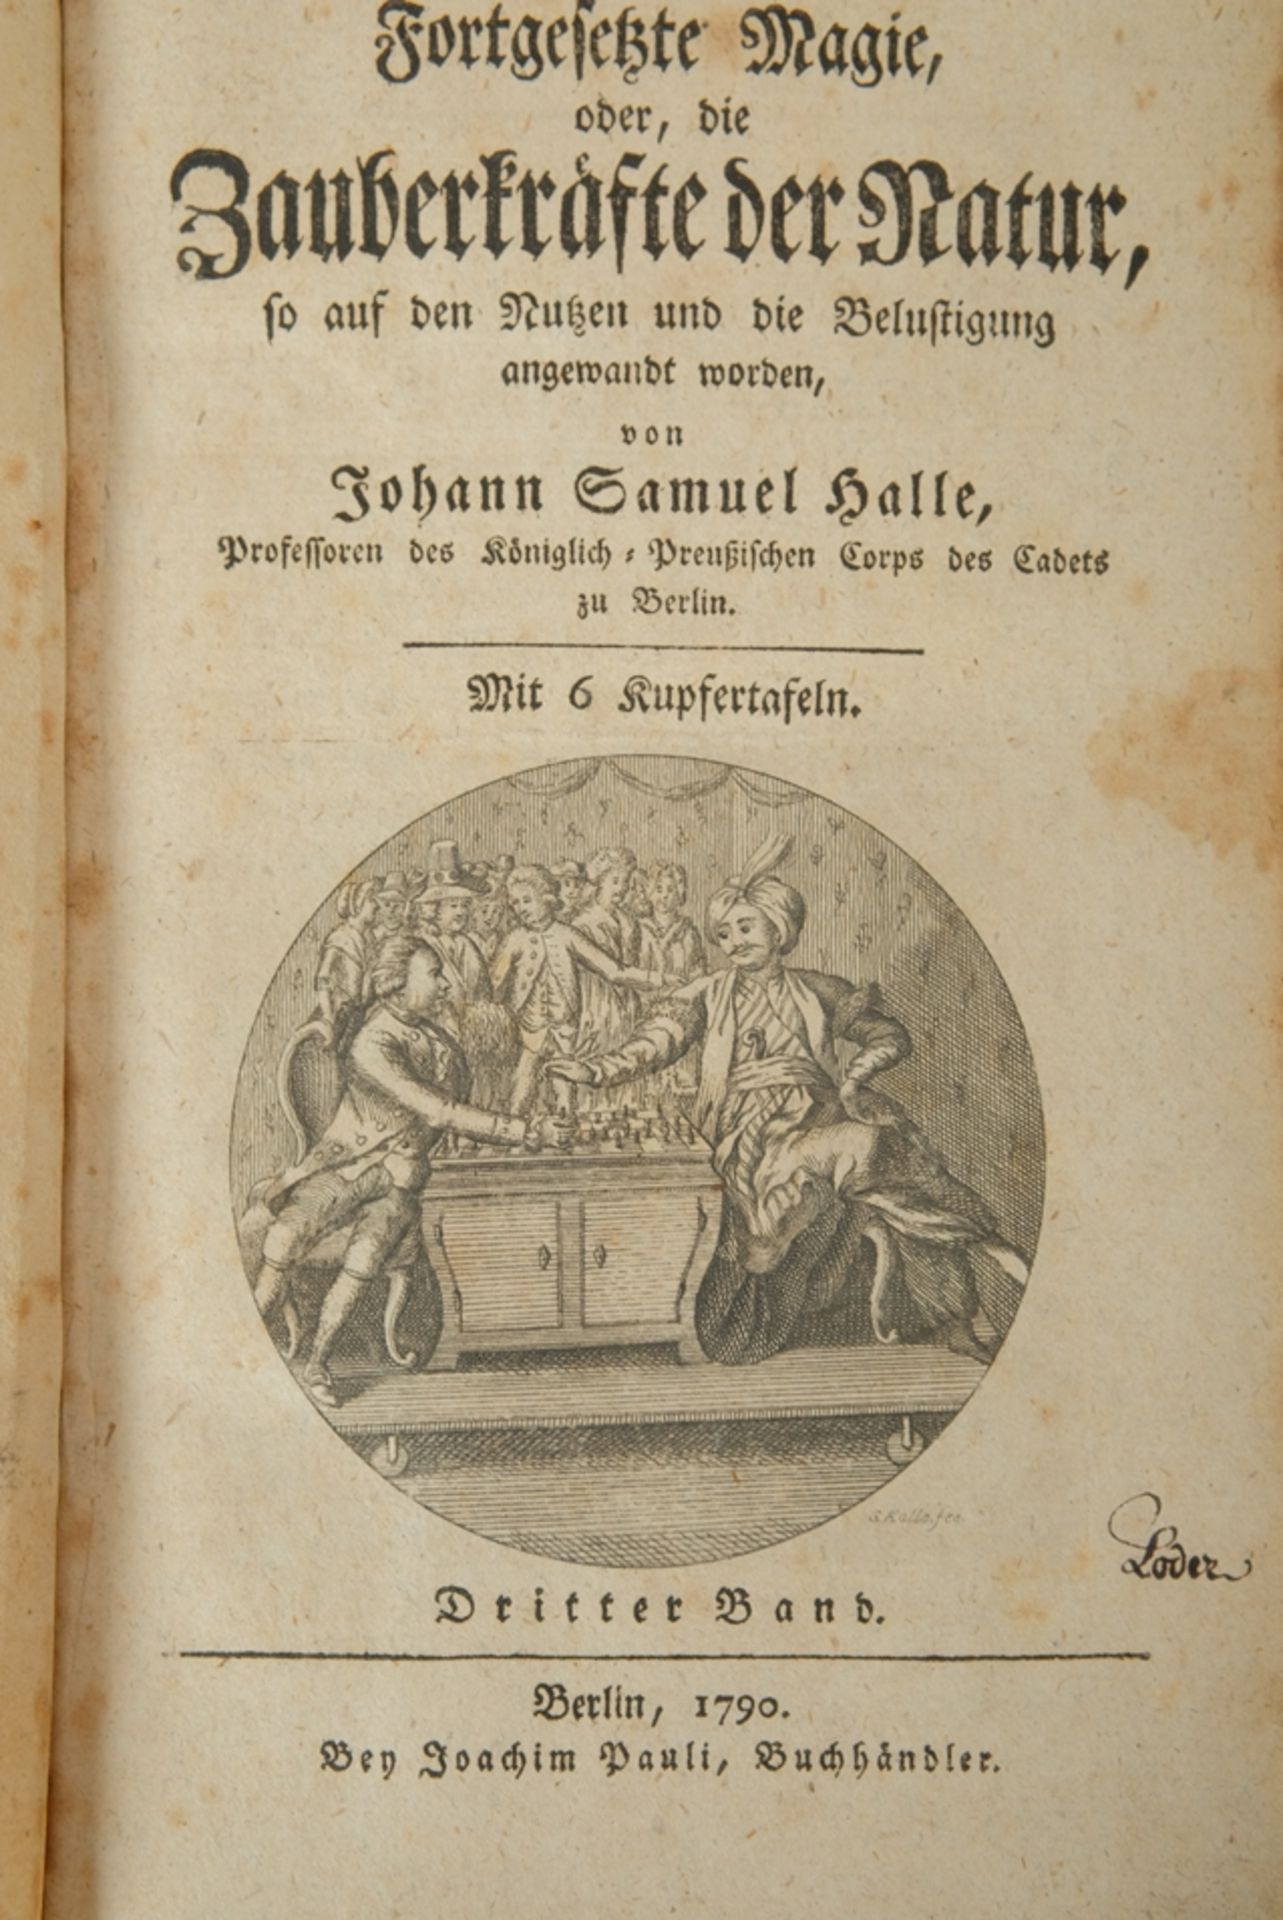 Halle, Johann Samuel "Magie, oder, Die Zauberkräfte der Natur", 1. und 3. Band, gedruckt 1783 & 179 - Bild 2 aus 3